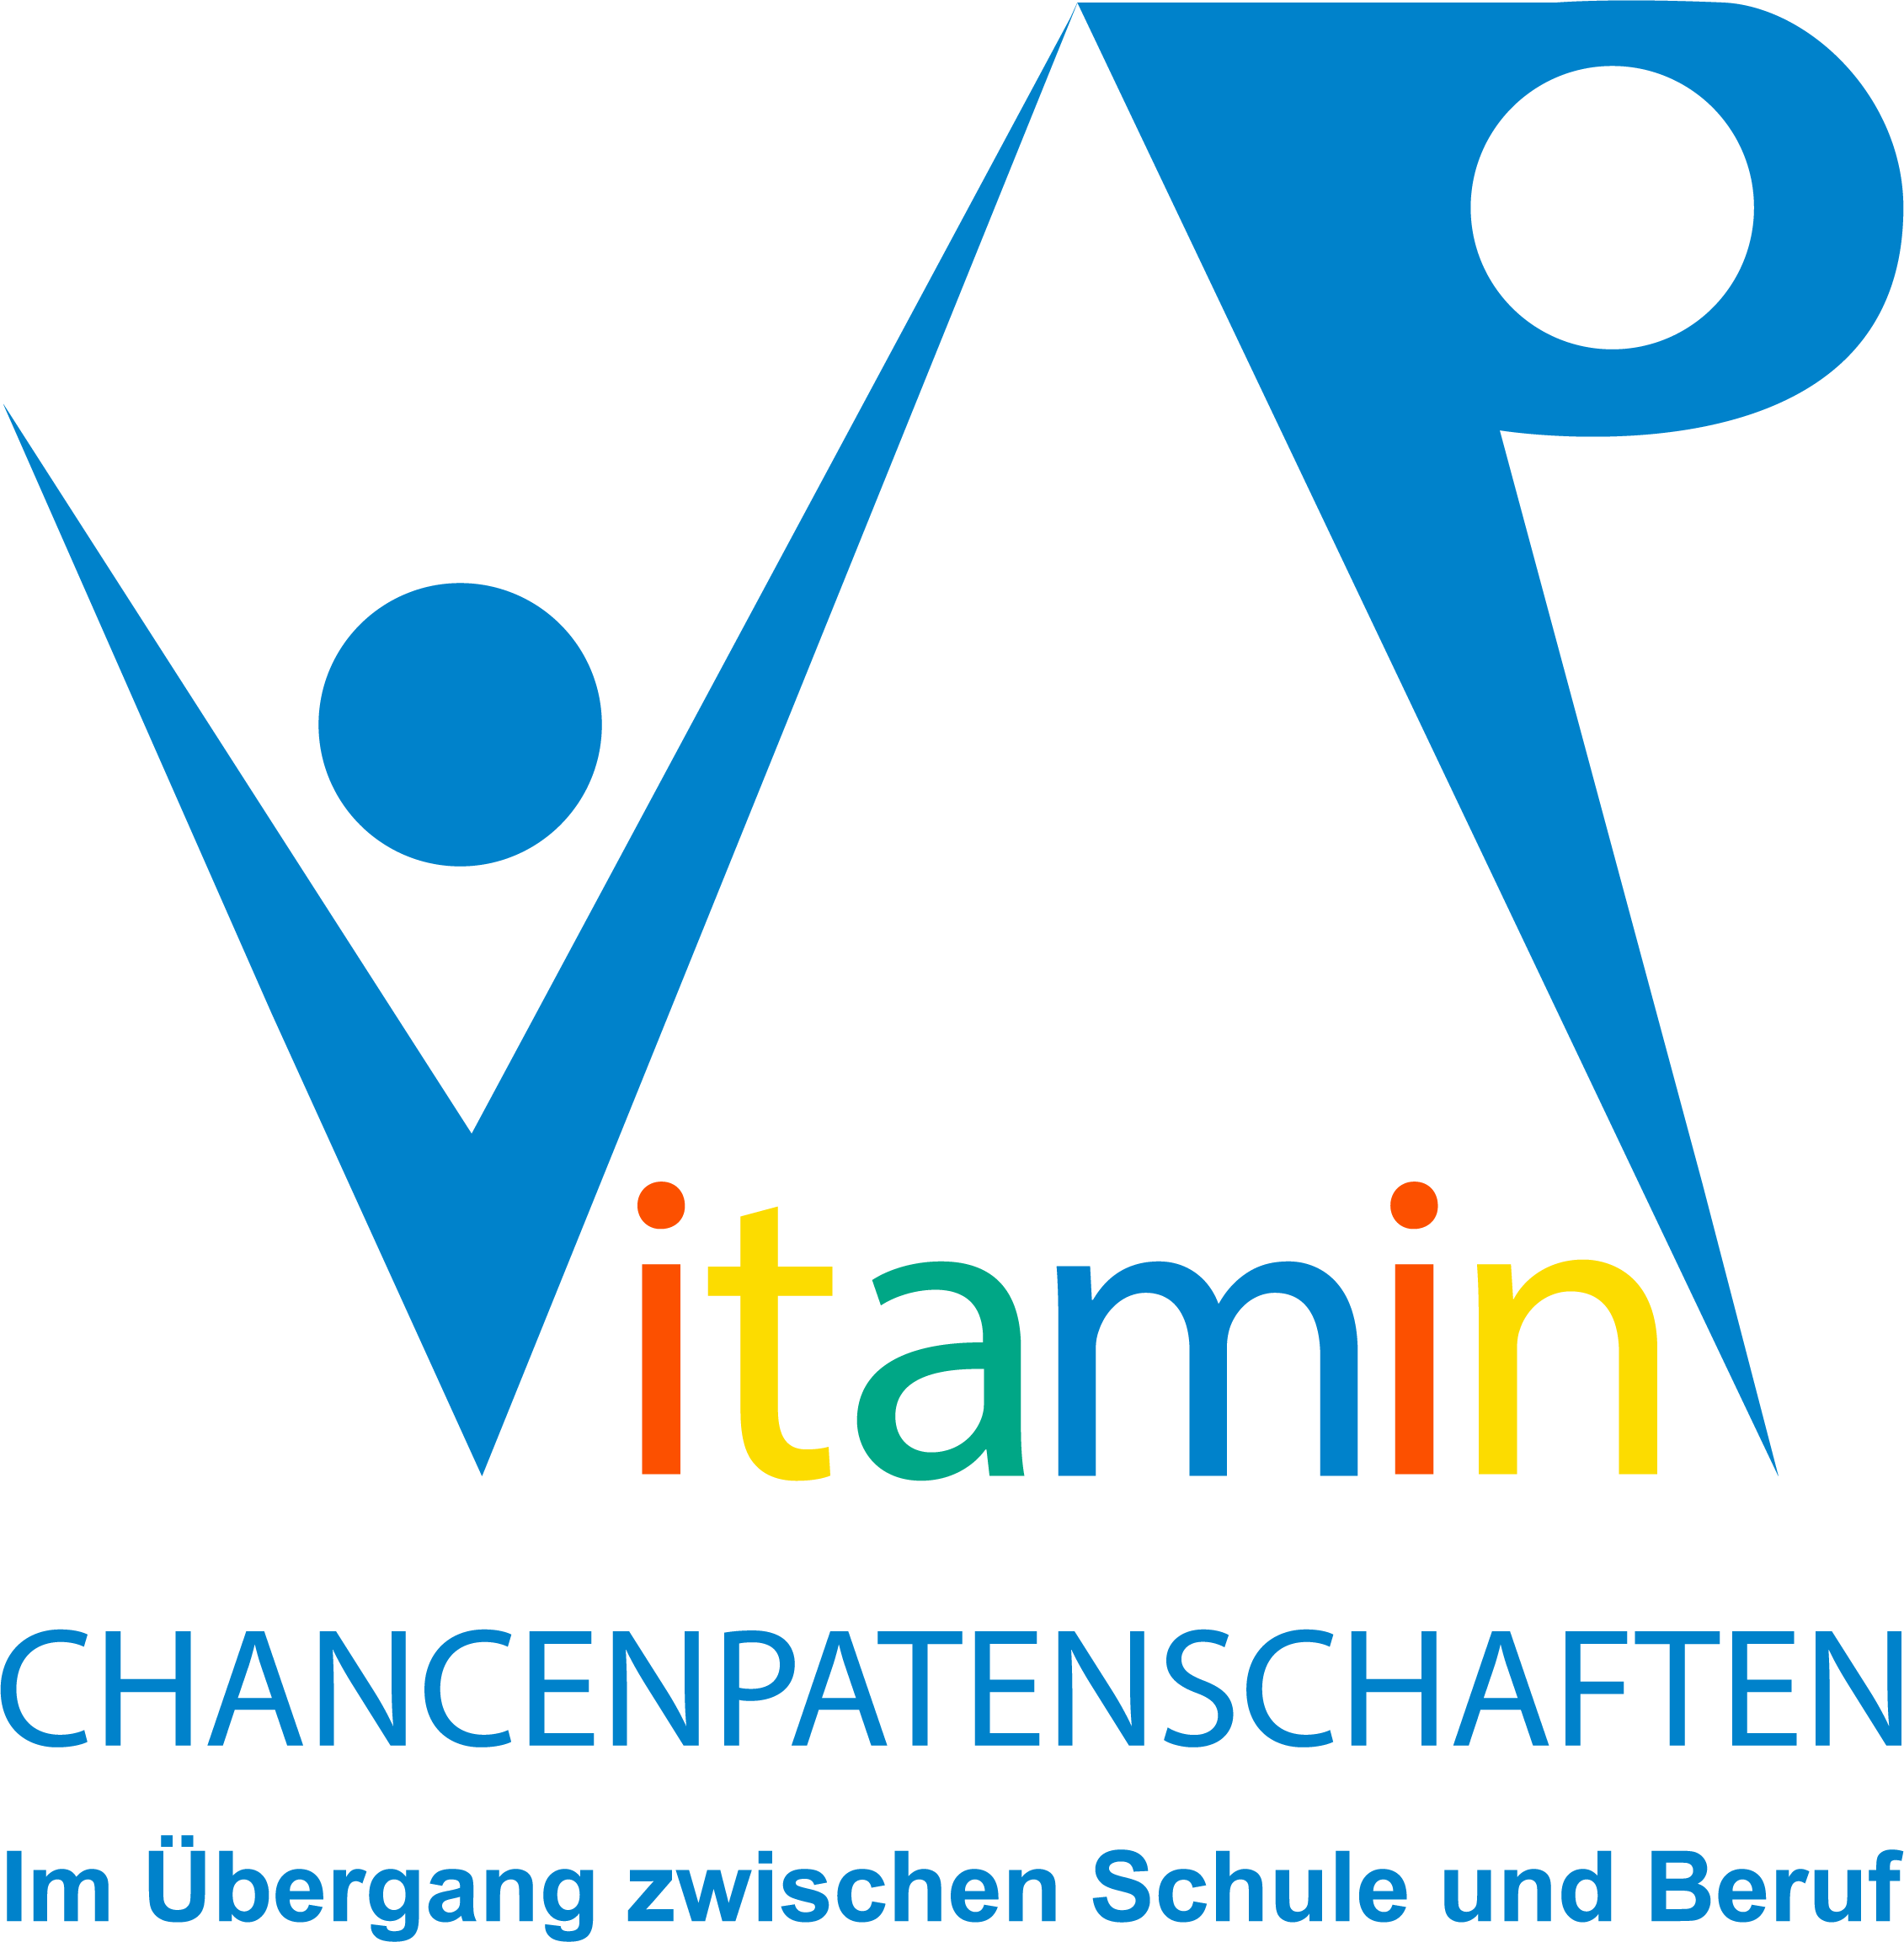 Wir sind Teil des VIW-Projektes “Vitamin P – Chancenpatenschaften im Übergang zwischen Schule und Beruf”